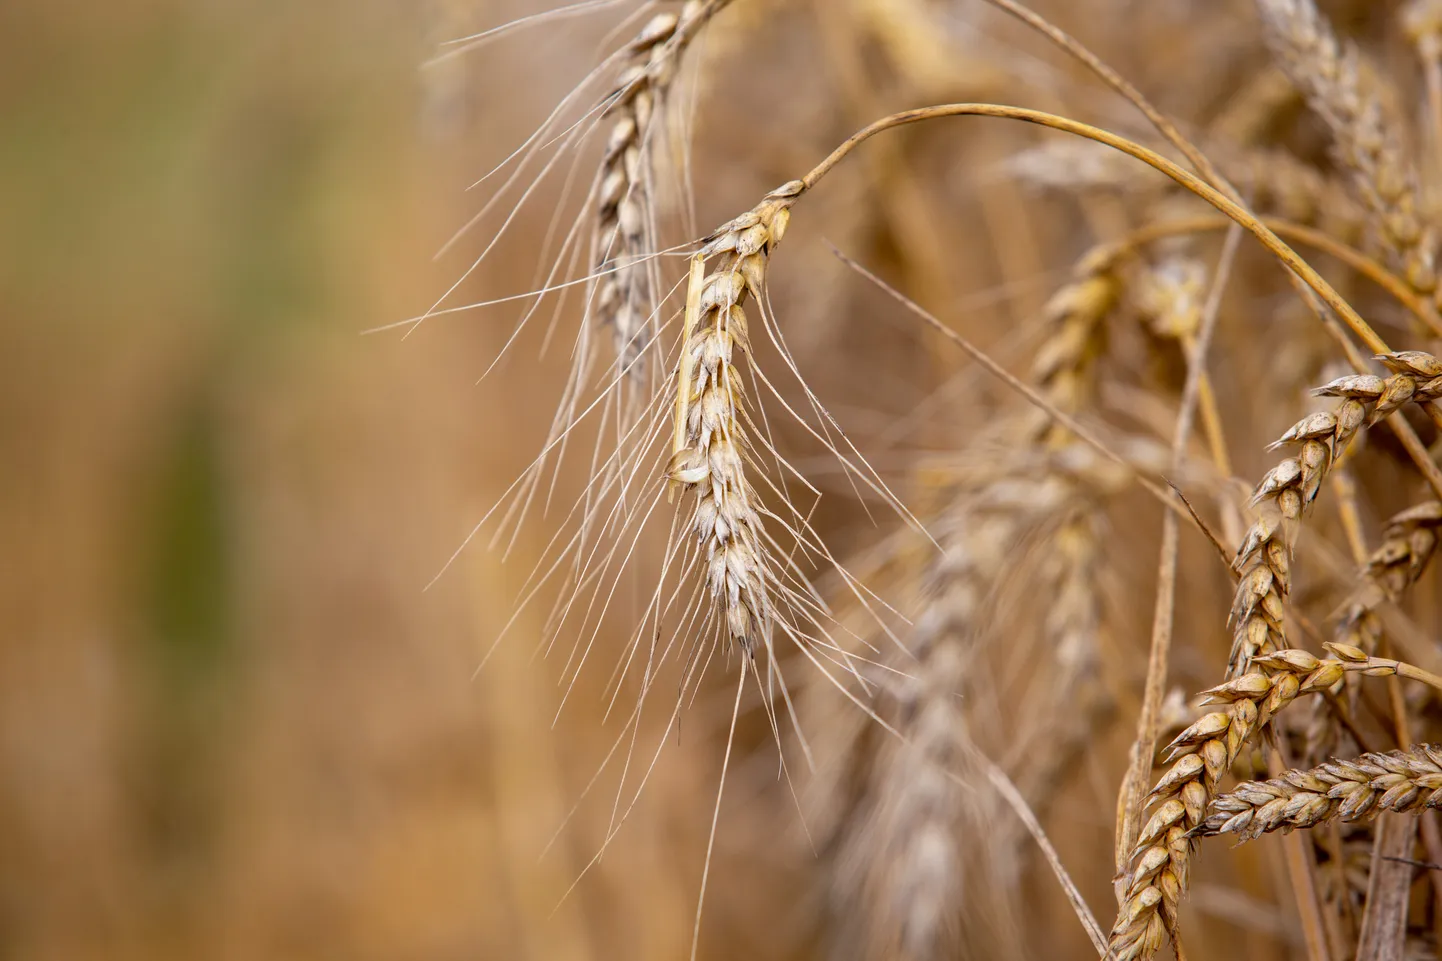 Ukraina moodustab 11% maailma nisuturust, 16% odra, 15% maisi, 16% rapsi, 50% päevalilleseemneõli, 9% päevalilleseemnete ja 61% päevalillekoogi turust.